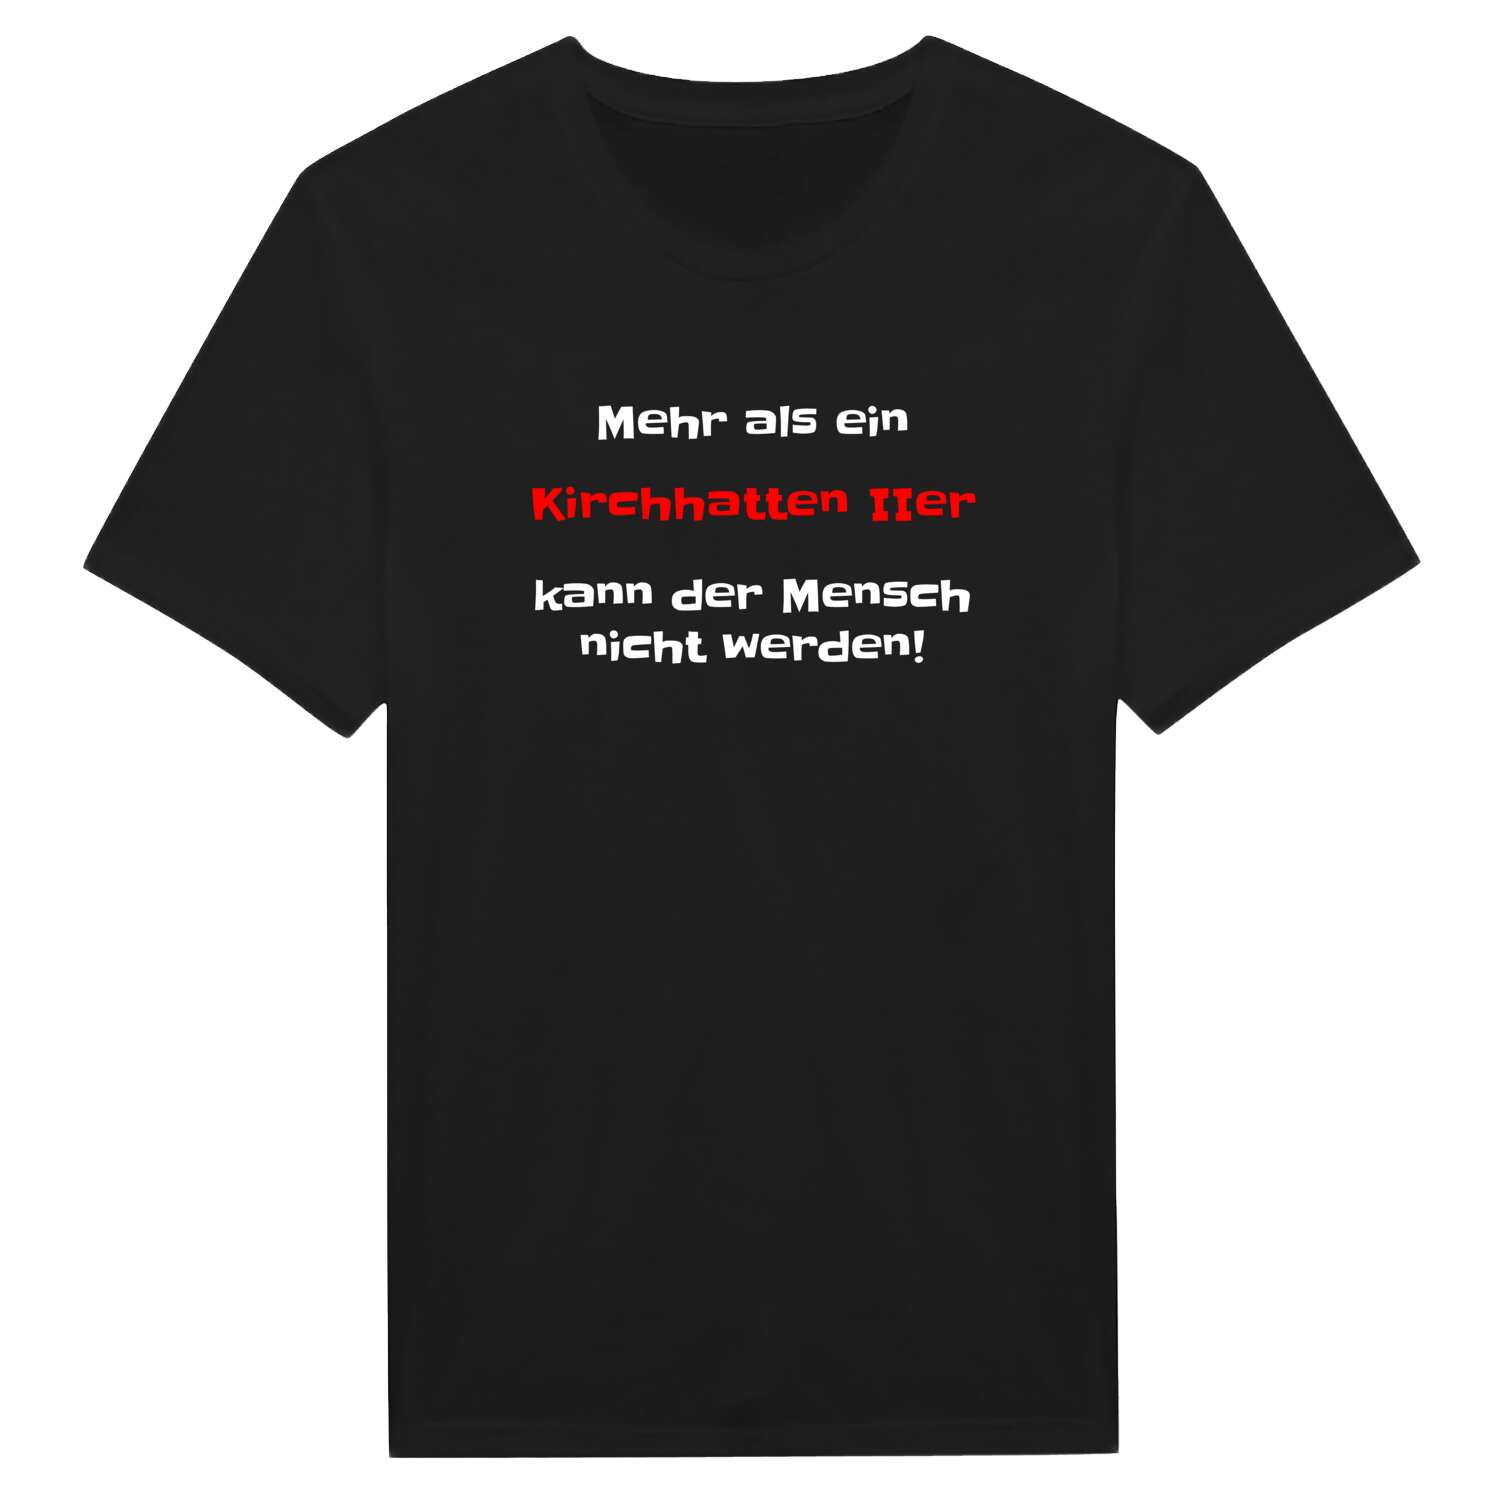 Kirchhatten II T-Shirt »Mehr als ein«